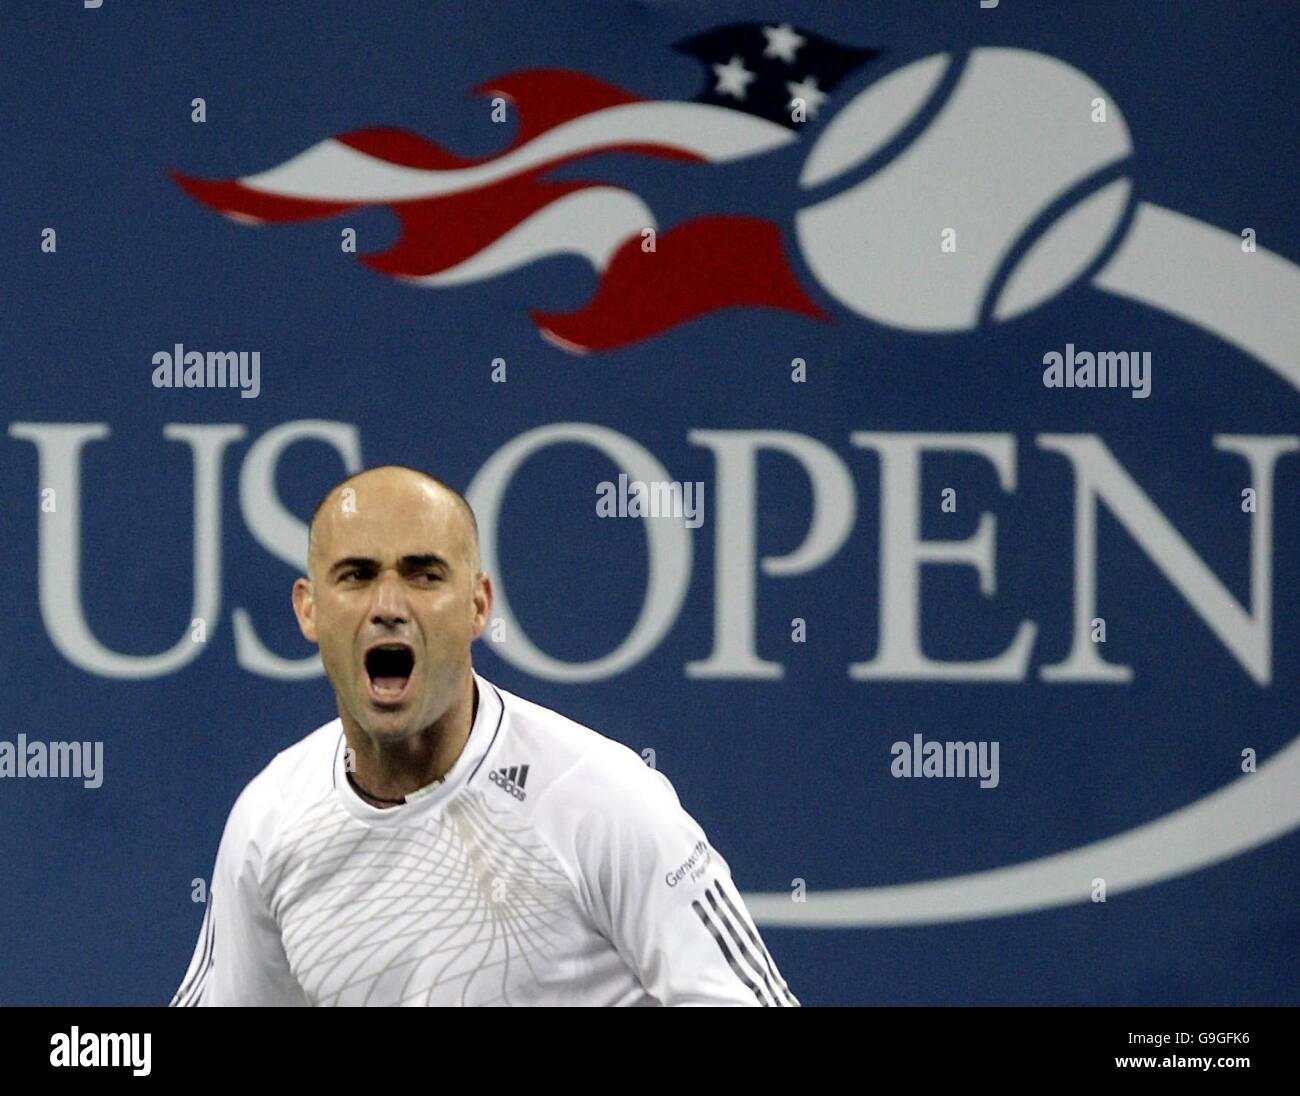 Tenis - US Open - Nueva York - Día Tres. El estadounidense Andre Agassi celebra después de vencer a Marcos Baghdatis en su segunda ronda en el US Open en Flushing Meadow, Nueva York. Foto de stock